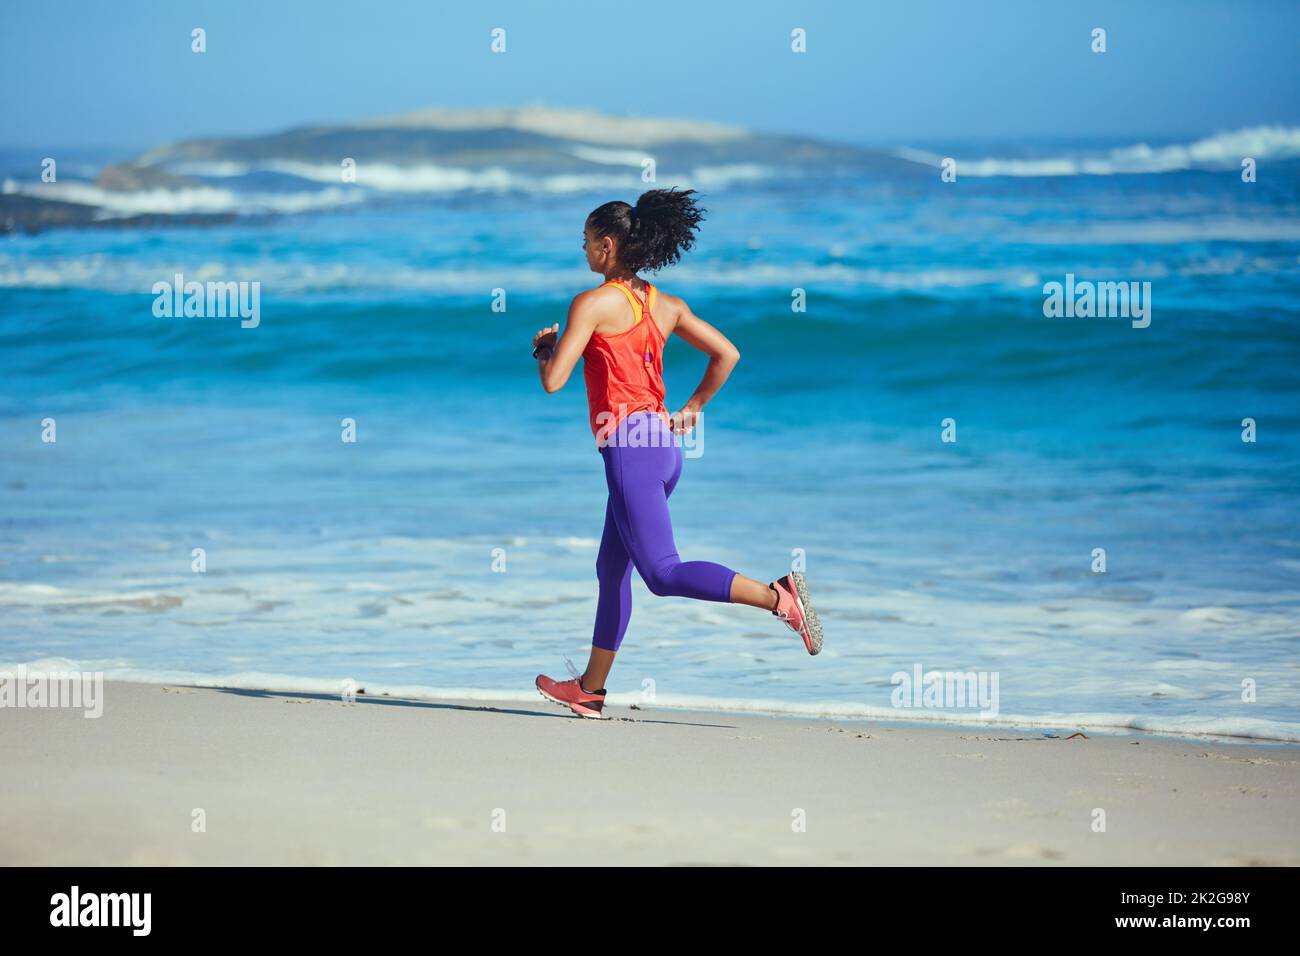 Courir avec une vue est beaucoup mieux. Photo d'une jeune femme sportive sur la plage pour sa course du matin. Banque D'Images